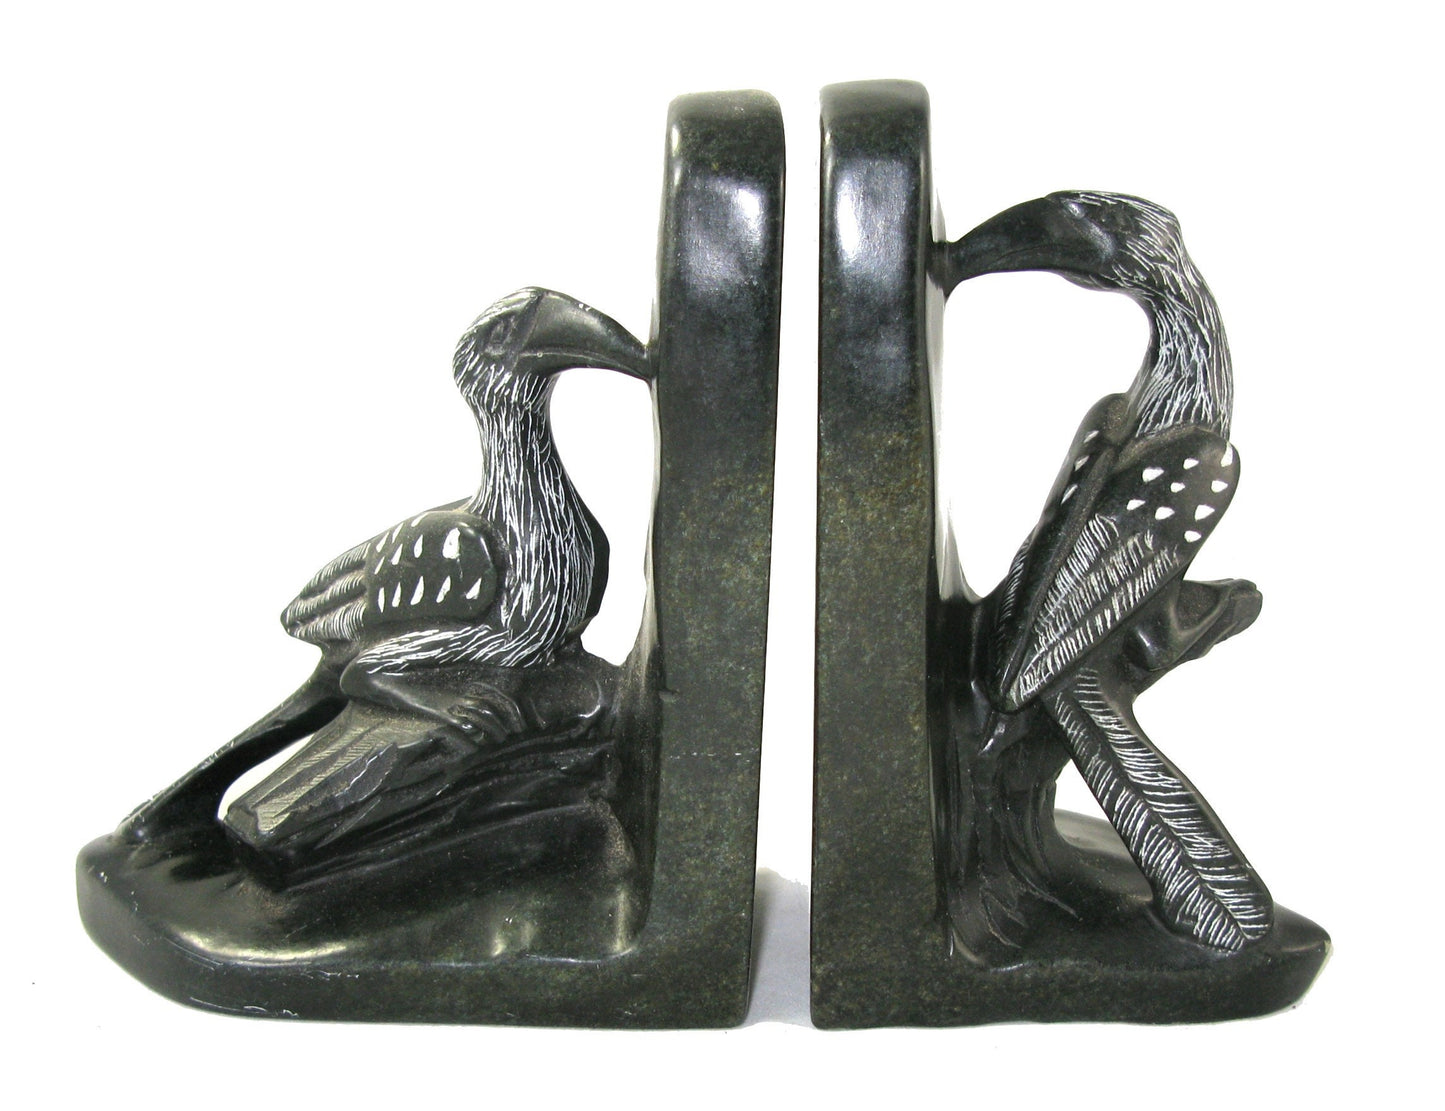 African Art Stone Hornbill Bookends Sculpture from Zimbabwe 15 cm